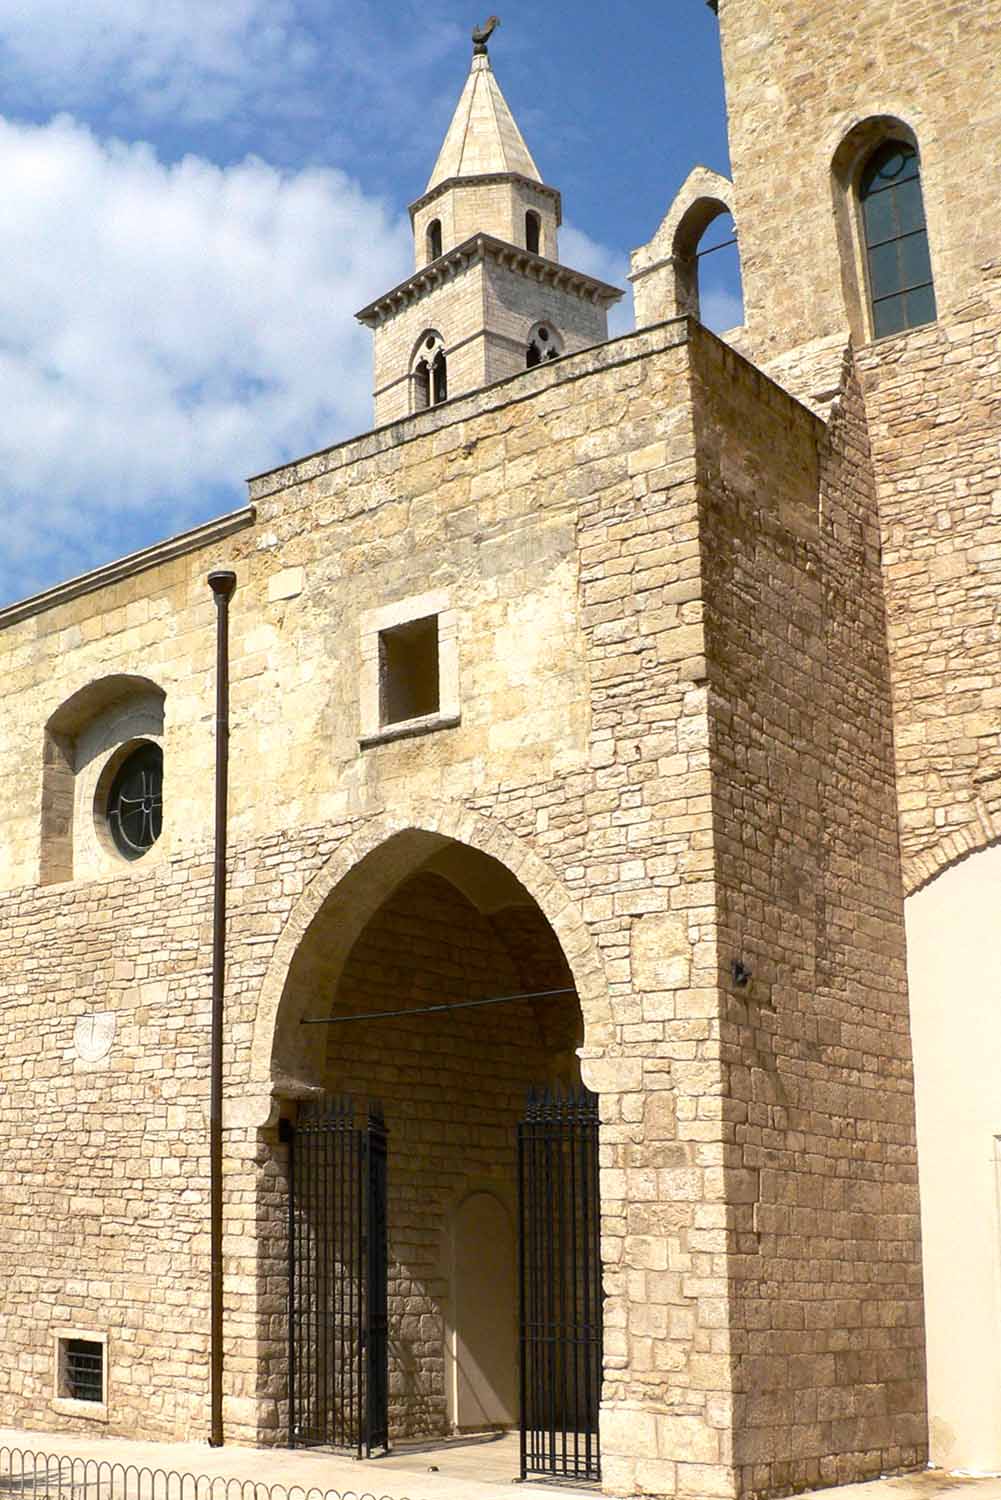 L'ingresso laterale con il campaniletto sulla navata e sullo sfondo il campanile